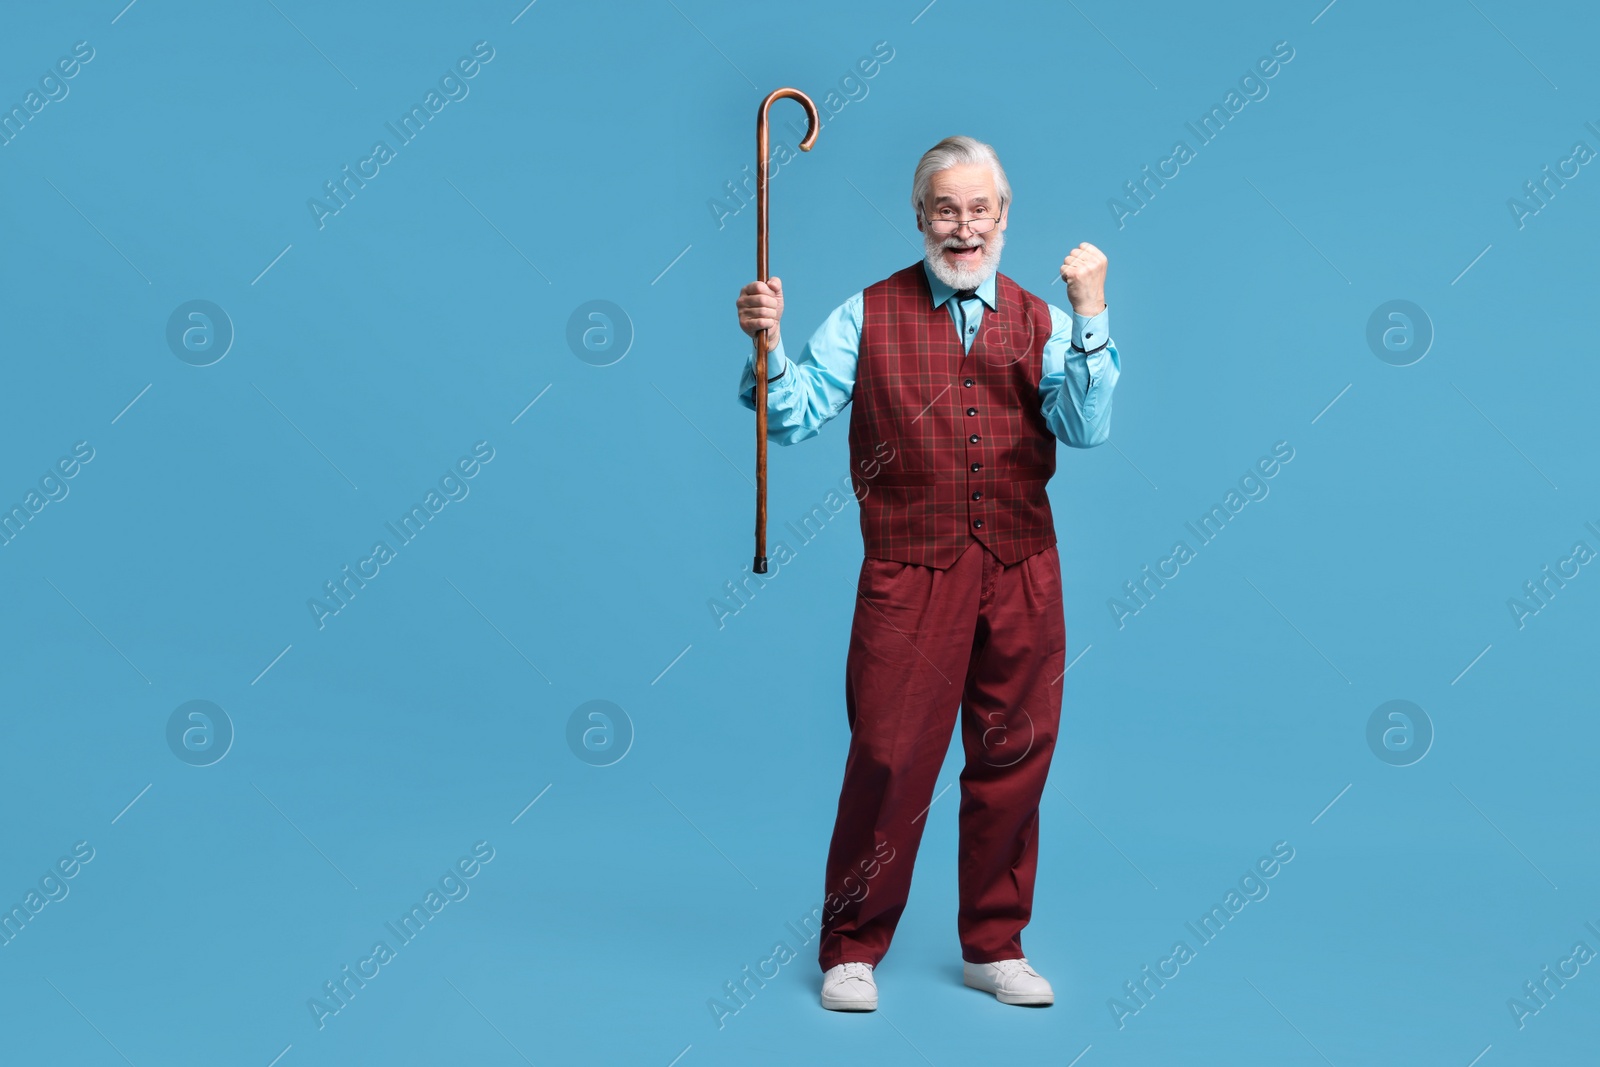 Photo of Emotional senior man with walking cane on light blue background